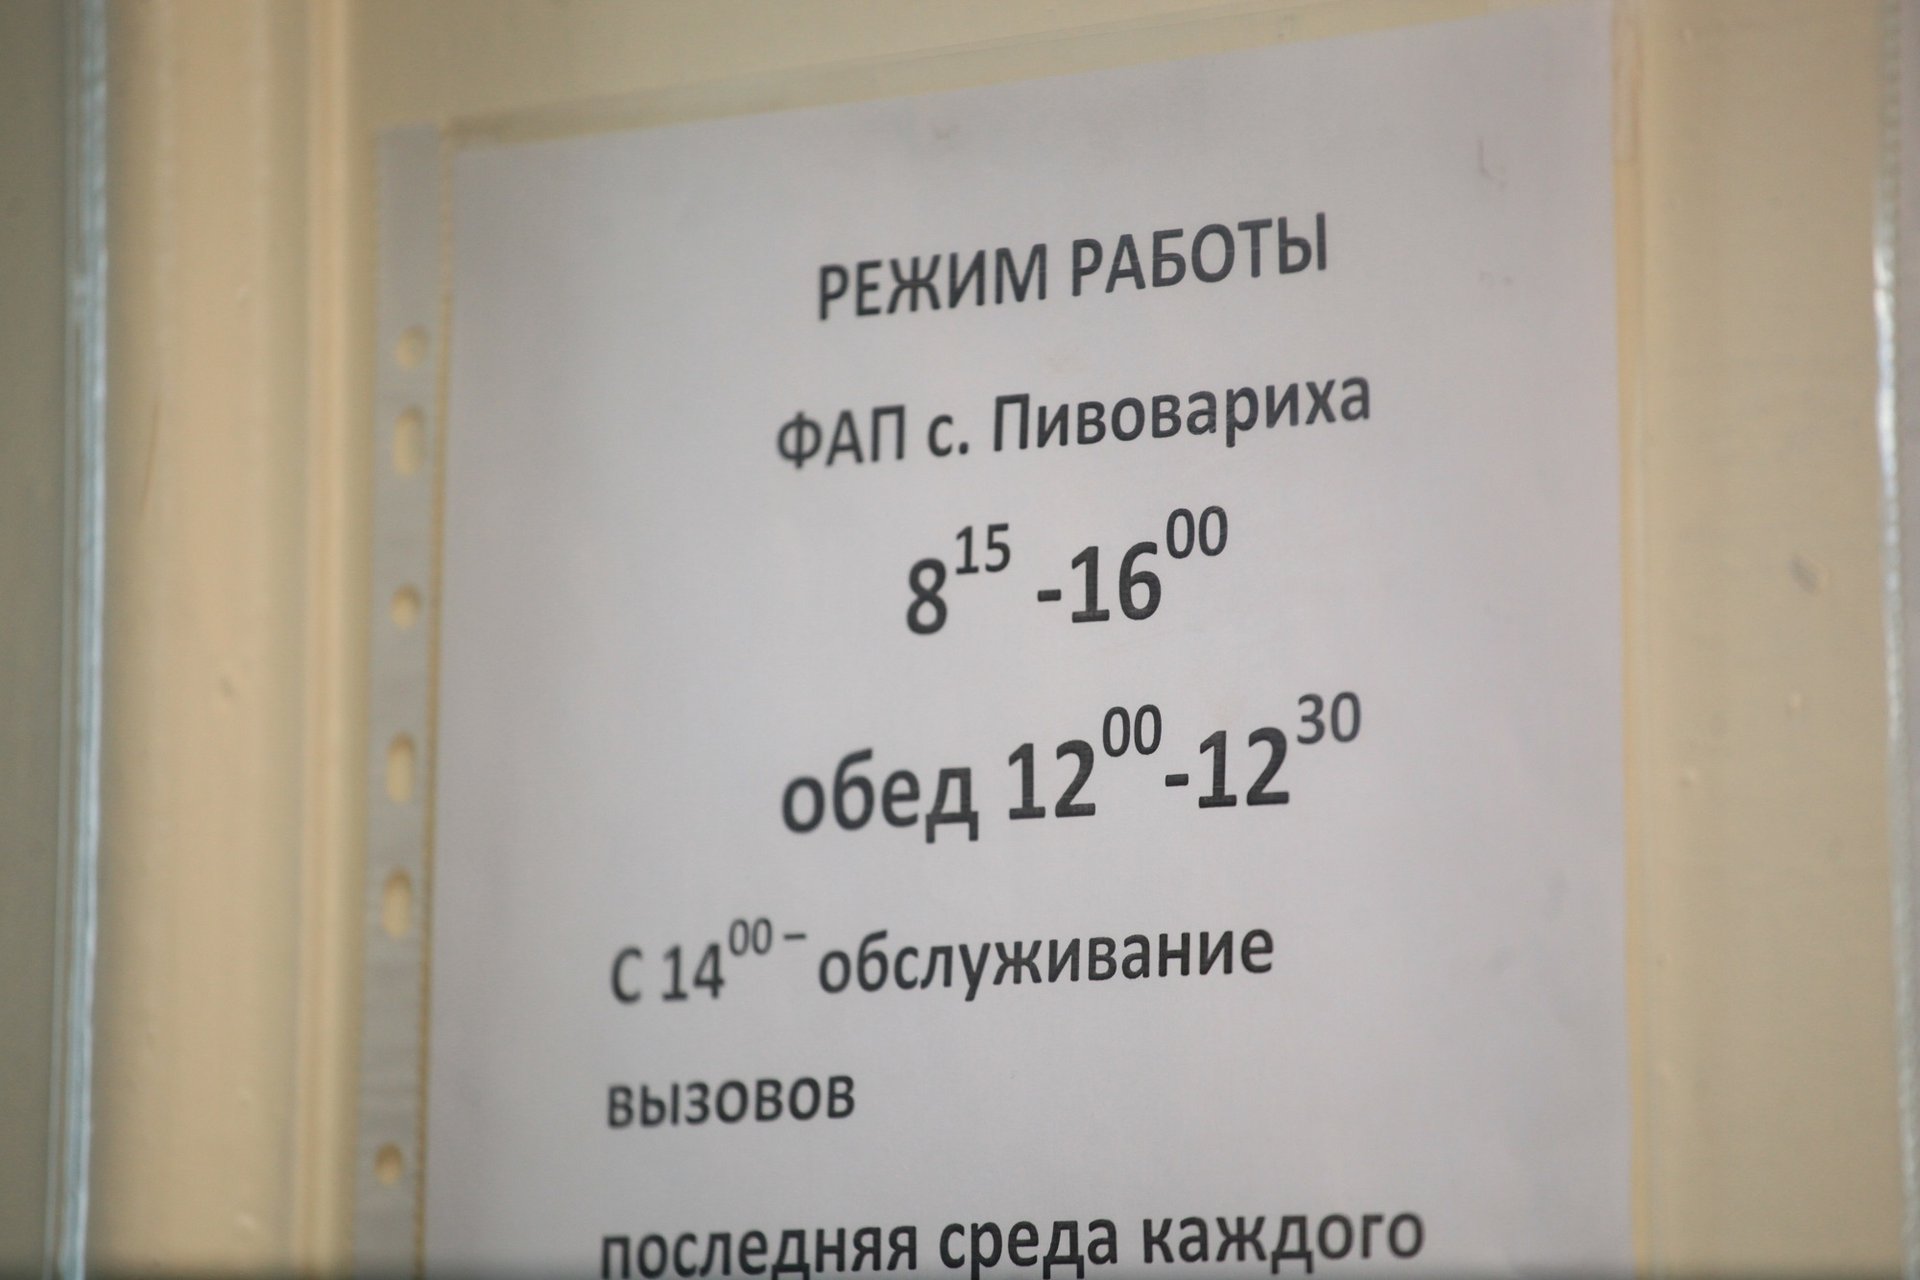 Из 47 ФАПов в Иркутском районе работают только 37 - не хватает кадров